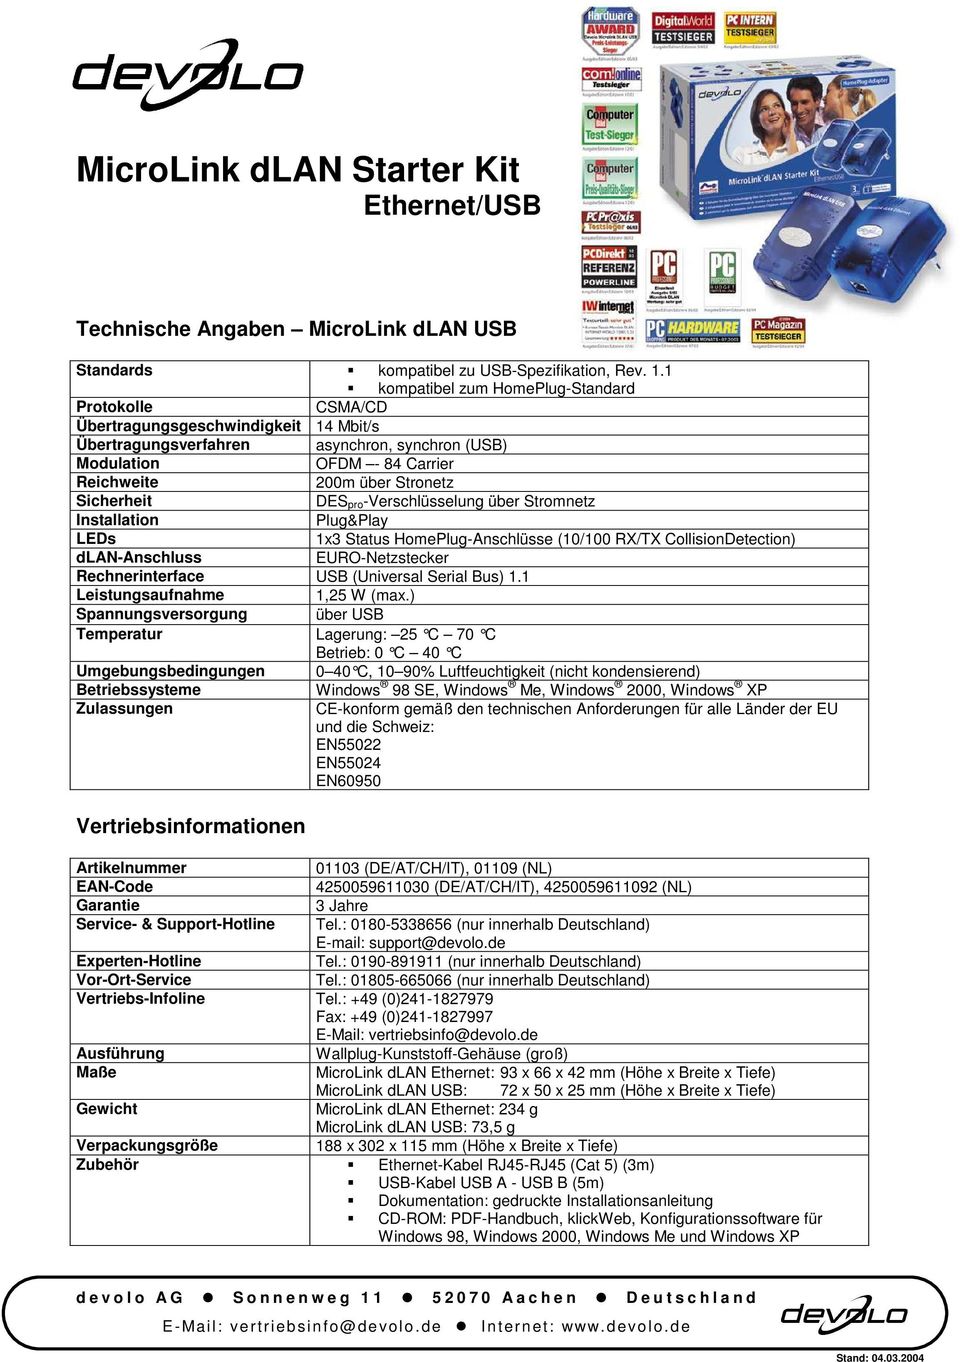 Sicherheit DES pro-verschlüsselung über Stromnetz Installation Plug&Play LEDs 1x3 Status HomePlug-Anschlüsse (10/100 RX/TX CollisionDetection) dlan-anschluss EURO-Netzstecker Rechnerinterface USB